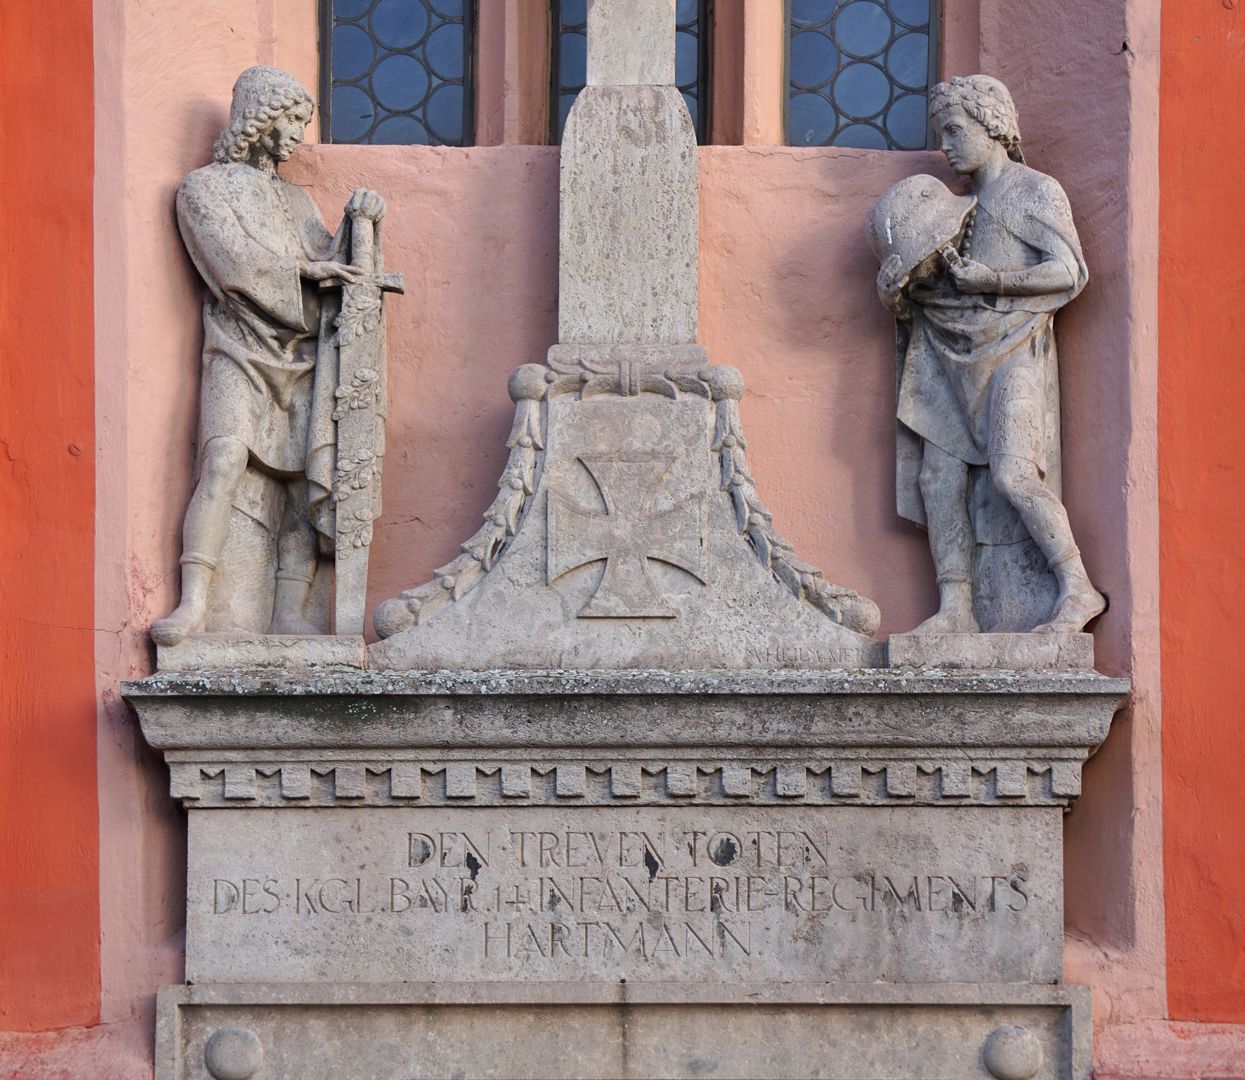 Kreuzigungsgruppe als Teil eines Gefallenendenkmals Assistenzfiguren, links und rechts eines Eisernen Kreuzes